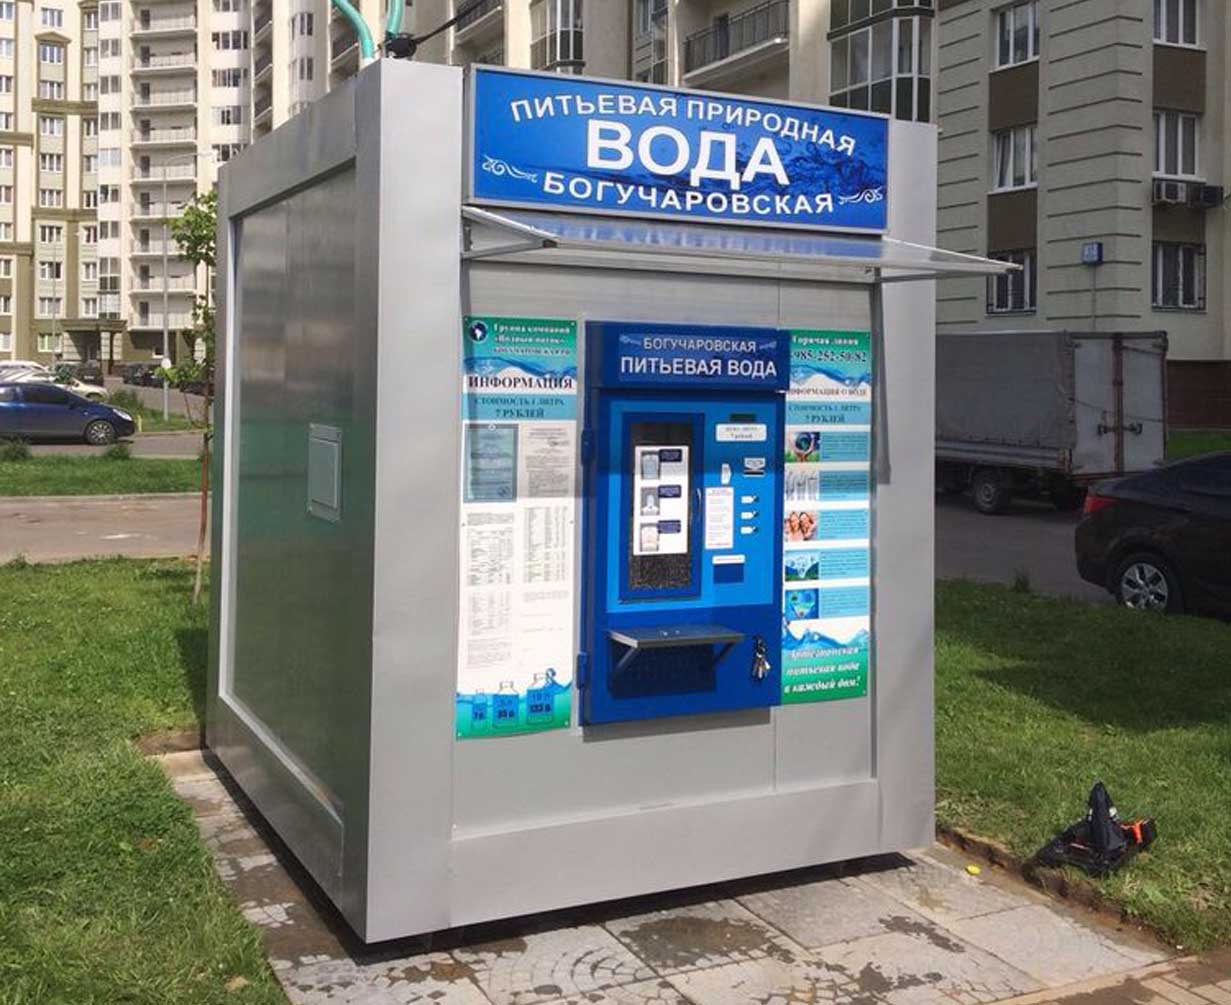 Аппарат для питьевой воды. Киоск с водой. Автомат для розлива воды. Уличный автомат с водой. Автомат для питьеаой водыводы.